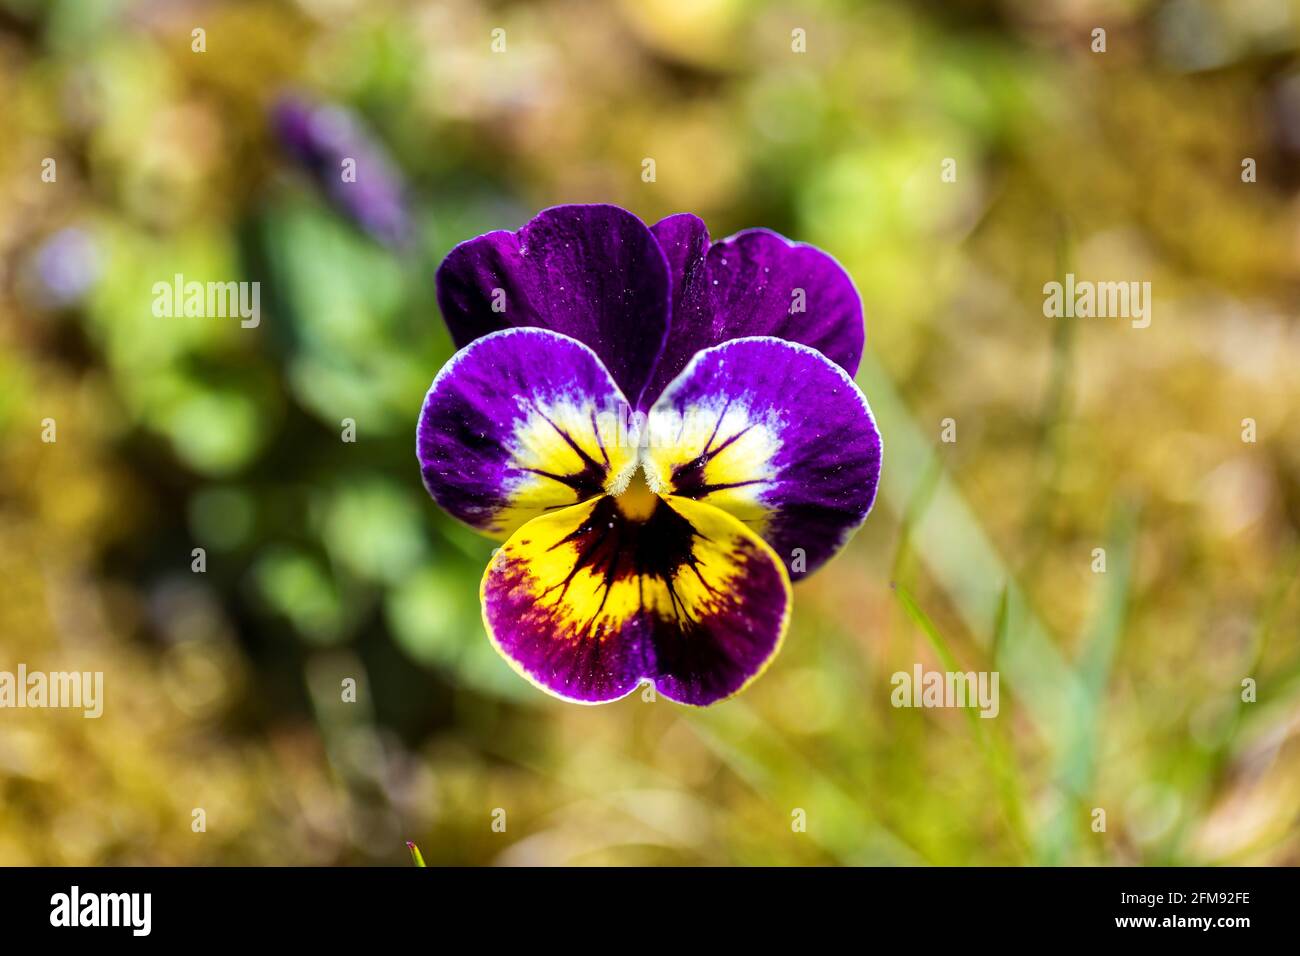 Un portrait de haut en bas d'une seule fleur de violette et jaune debout  dans une pelouse d'herbe d'un jardin par une journée ensoleillée. La petite  usine fait partie de la vio